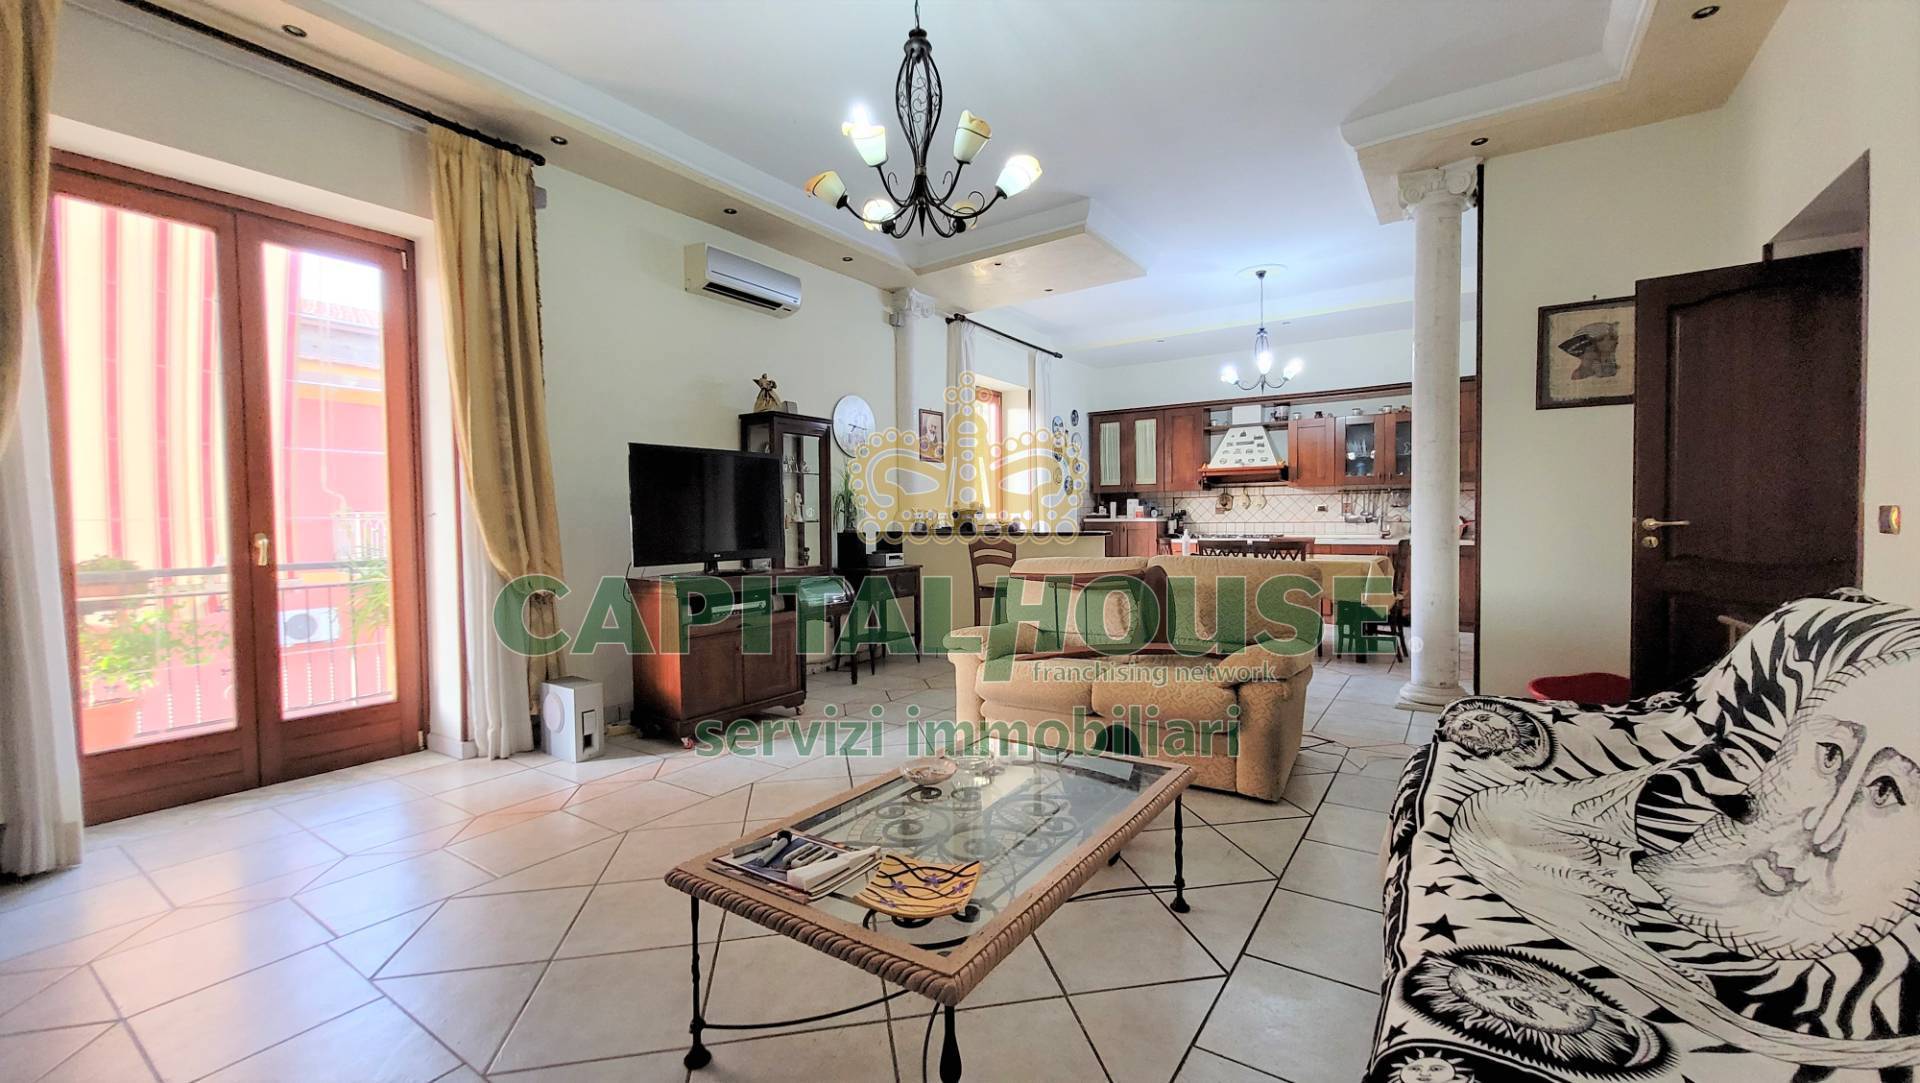 Appartamento in vendita a Macerata Campania, 3 locali, prezzo € 192.000 | PortaleAgenzieImmobiliari.it